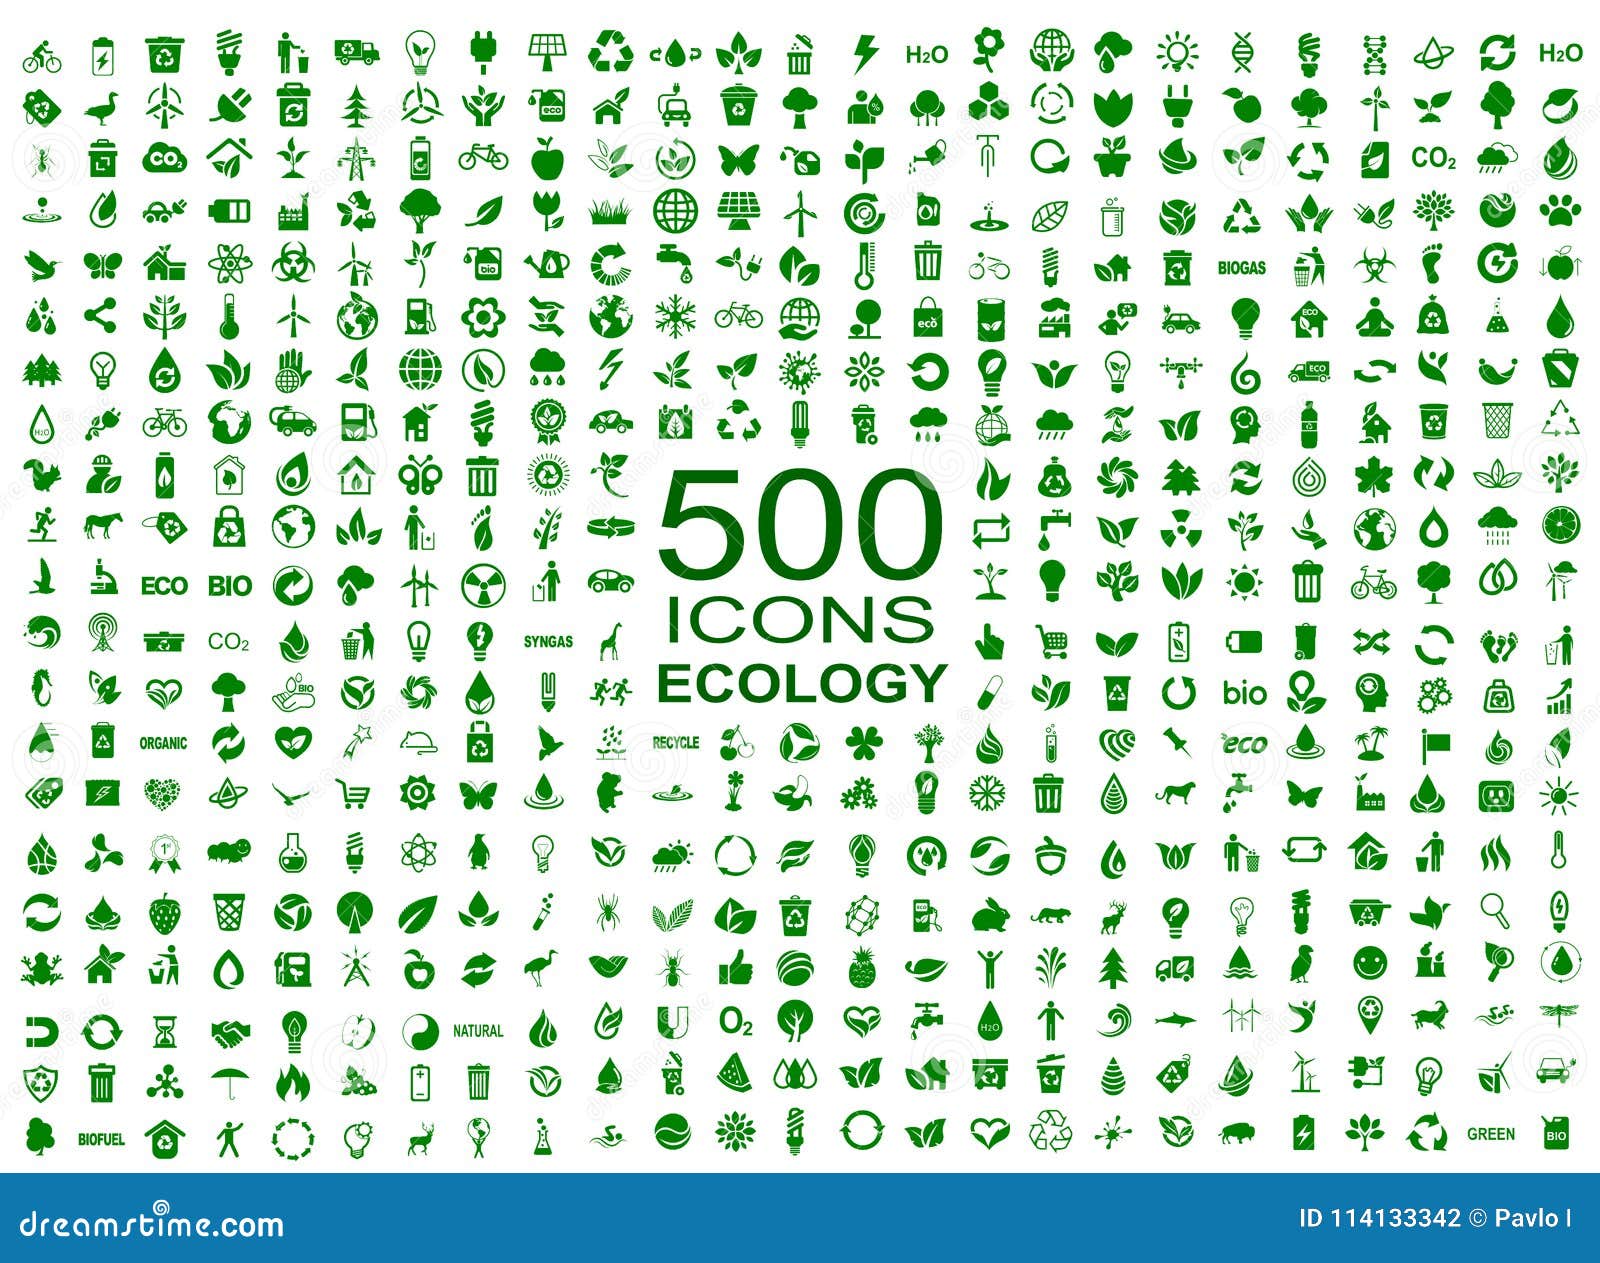 set of 500 ecology icons - 